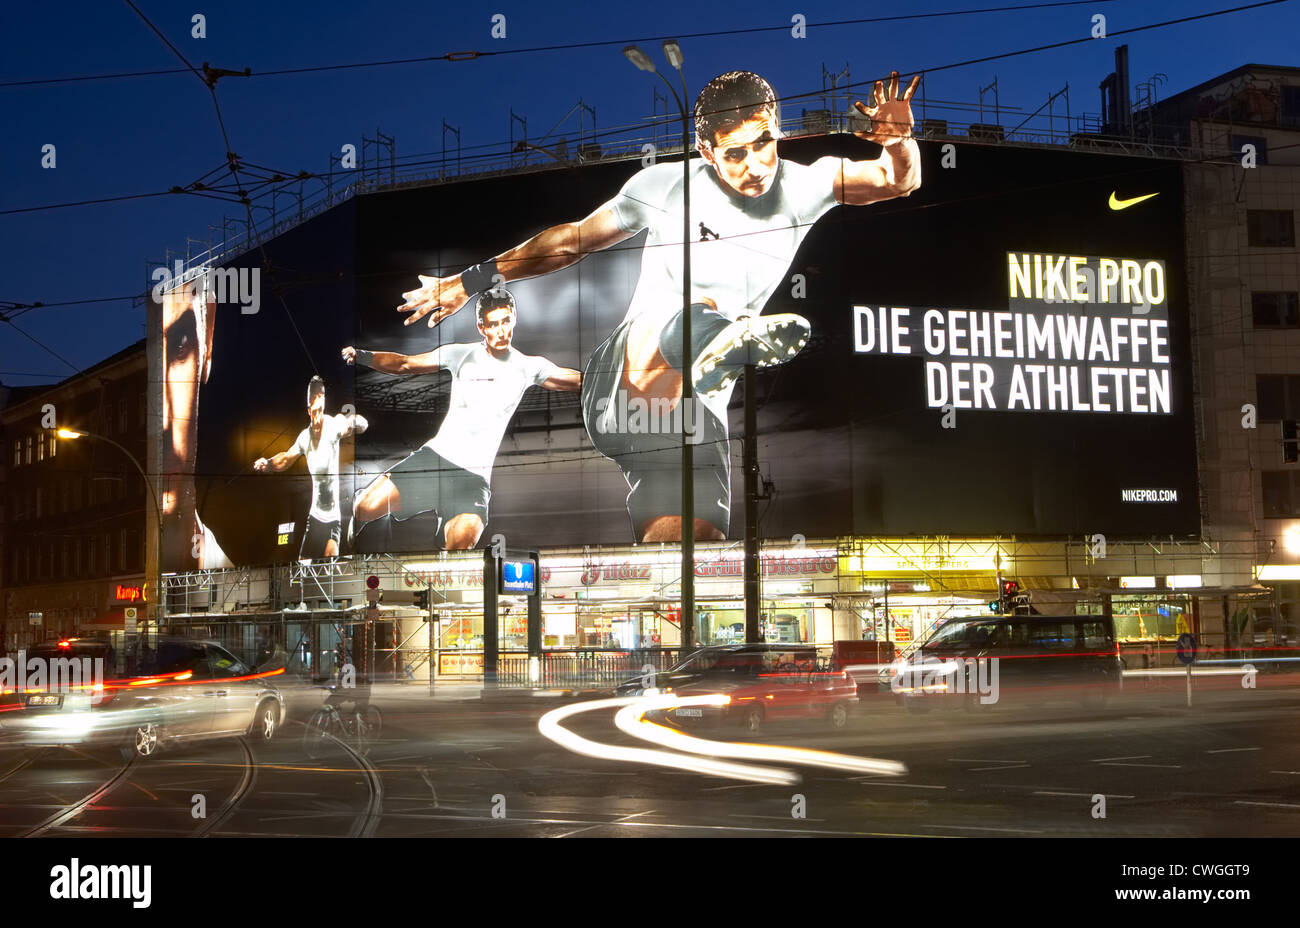 Nike billboard -Fotos und -Bildmaterial in hoher Auflösung – Alamy